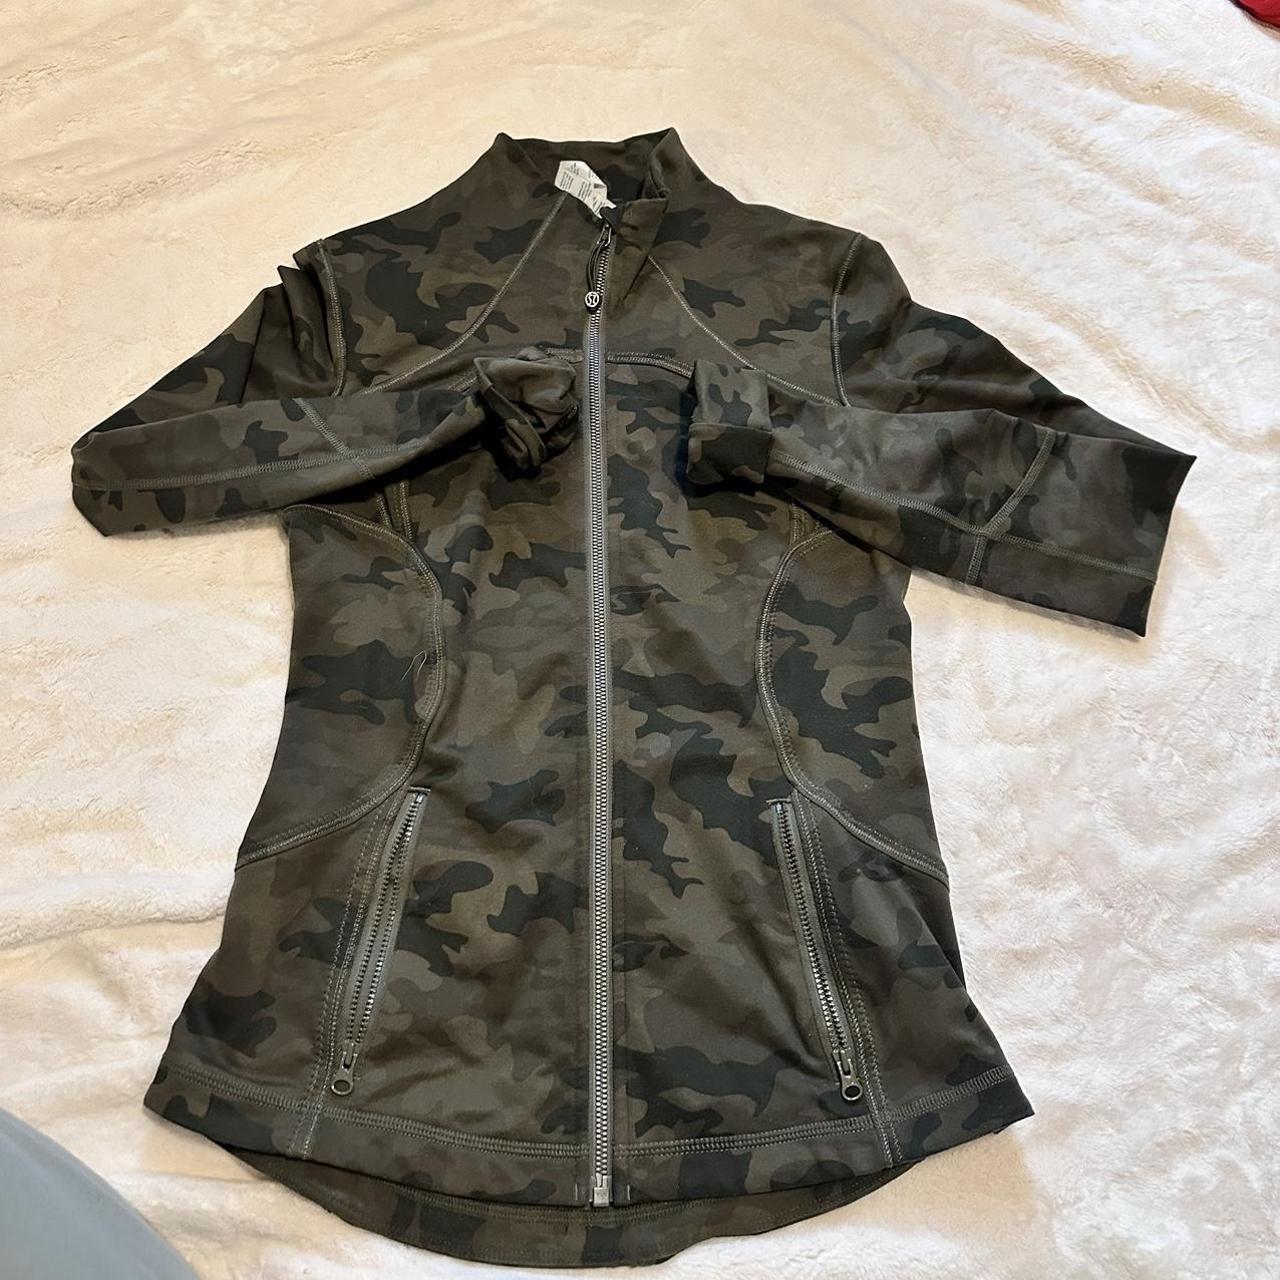 Lululemon define jacket size 6 barely worn - Depop